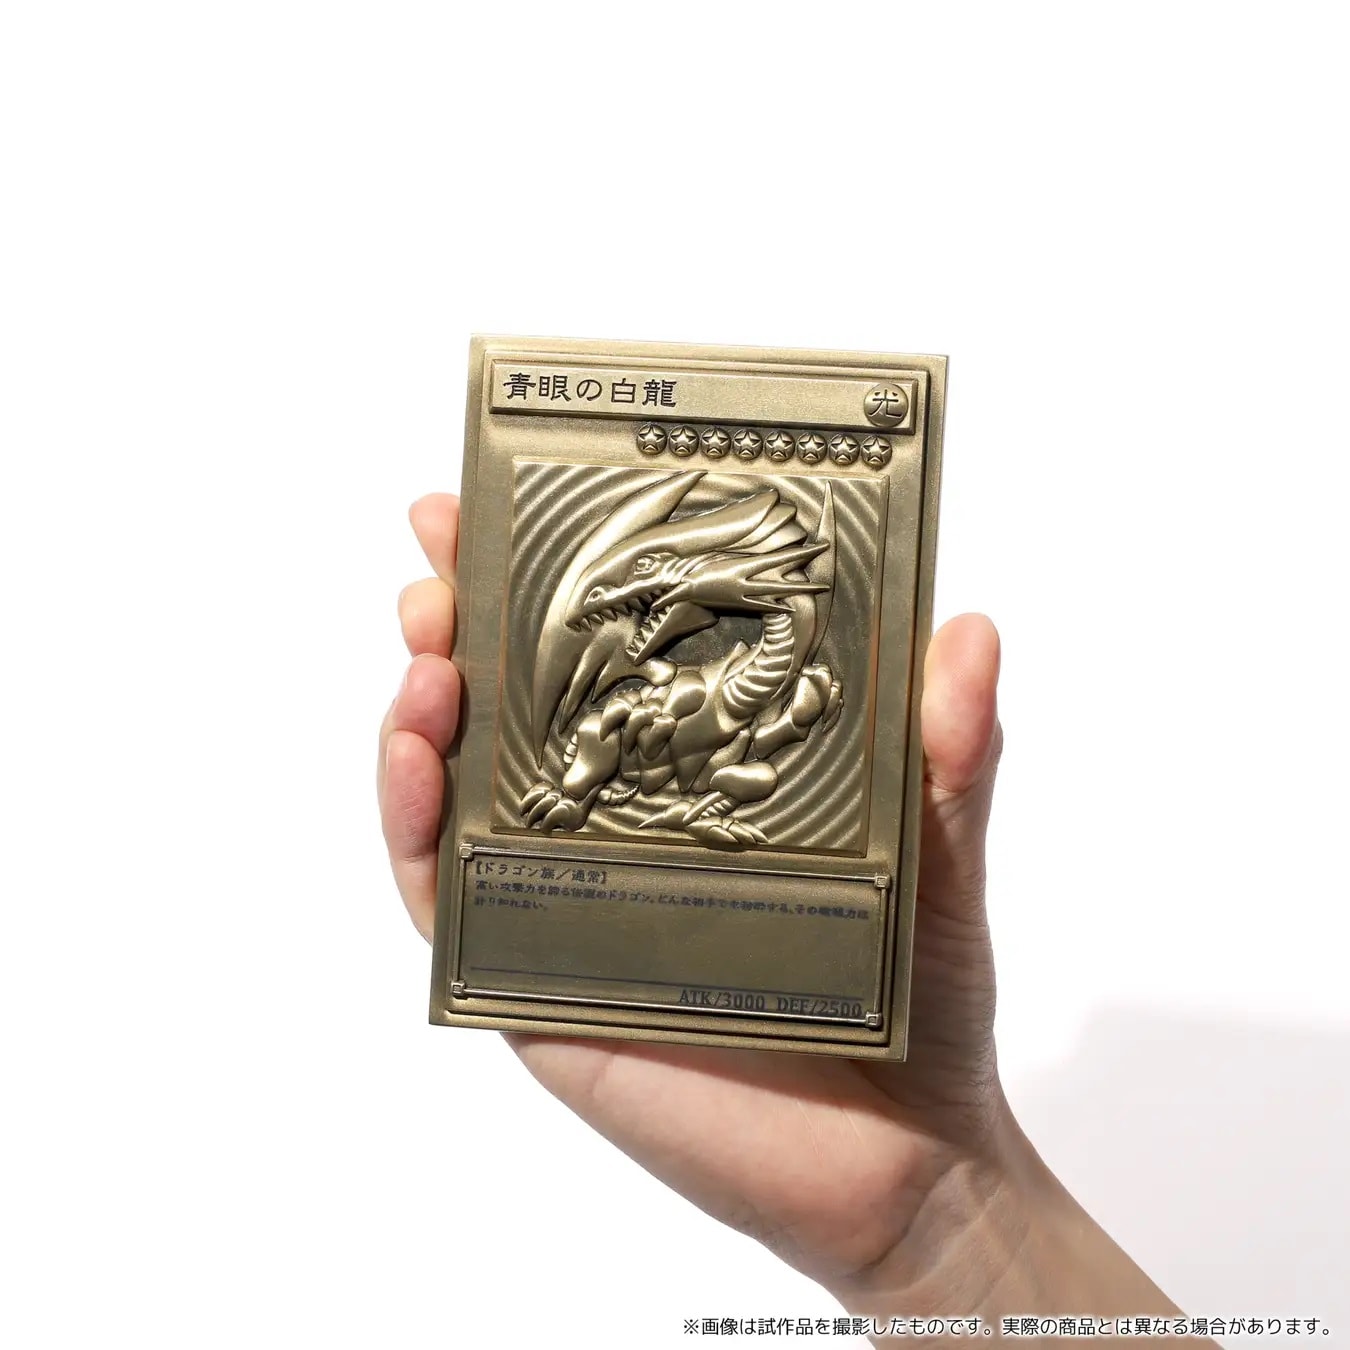 《遊戲王 Yu-Gi-Oh!》推出全新「浮雕卡牌套裝」